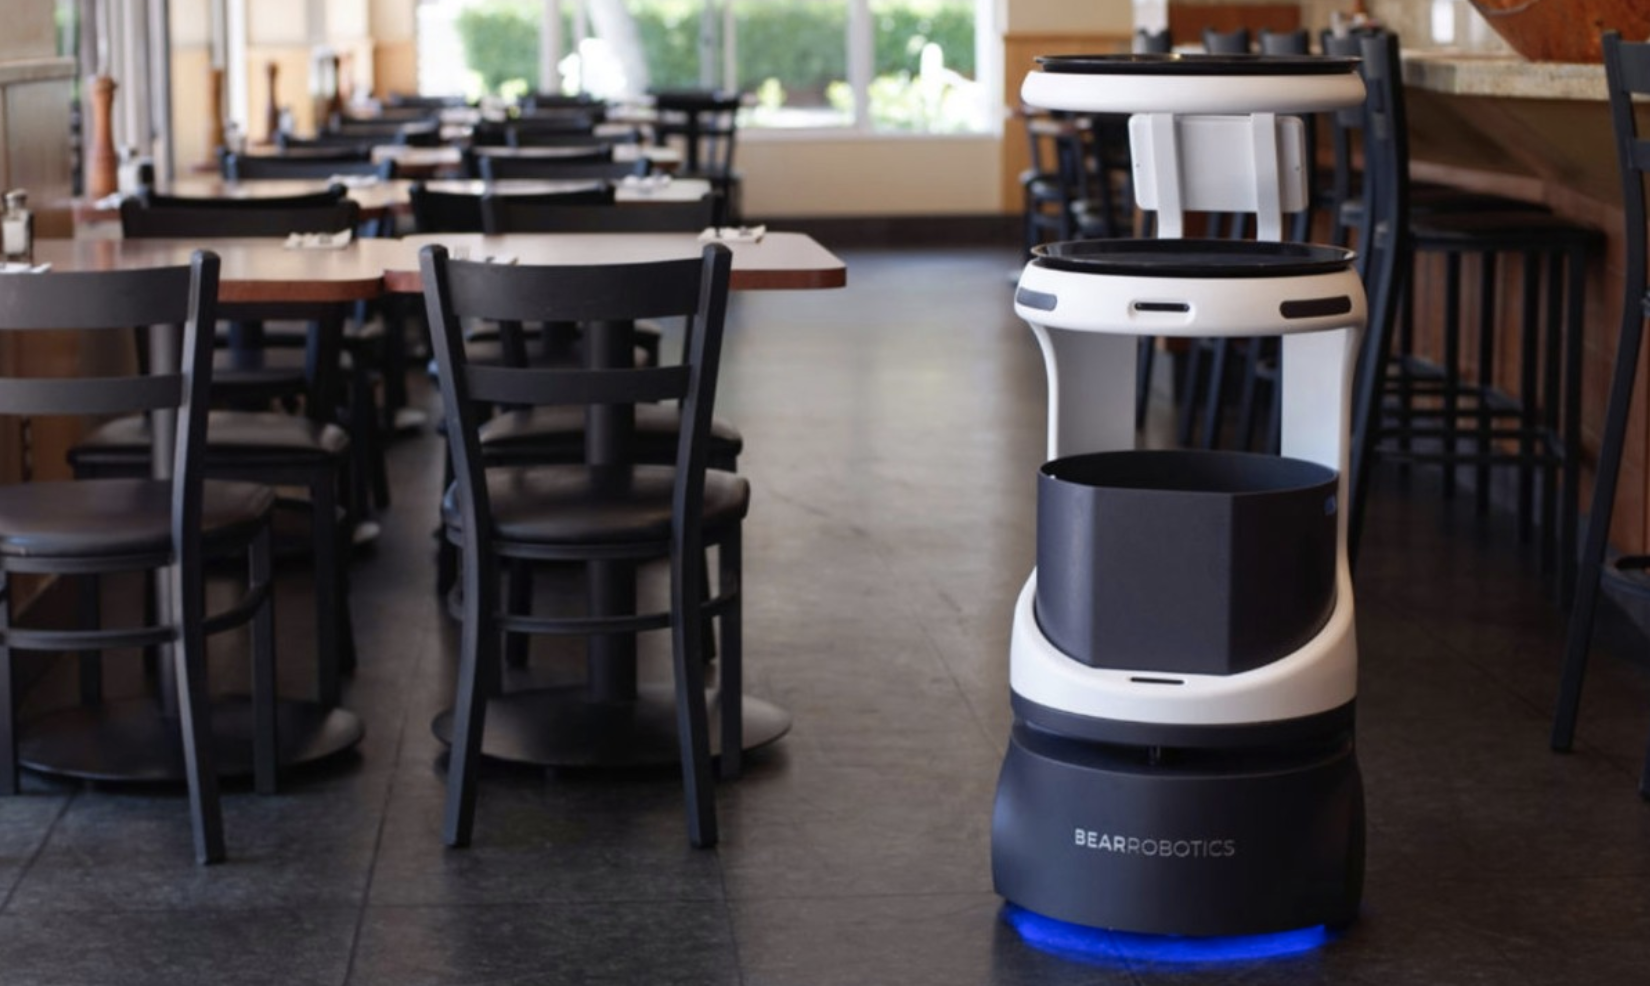 软银将在日本推出送餐机器人